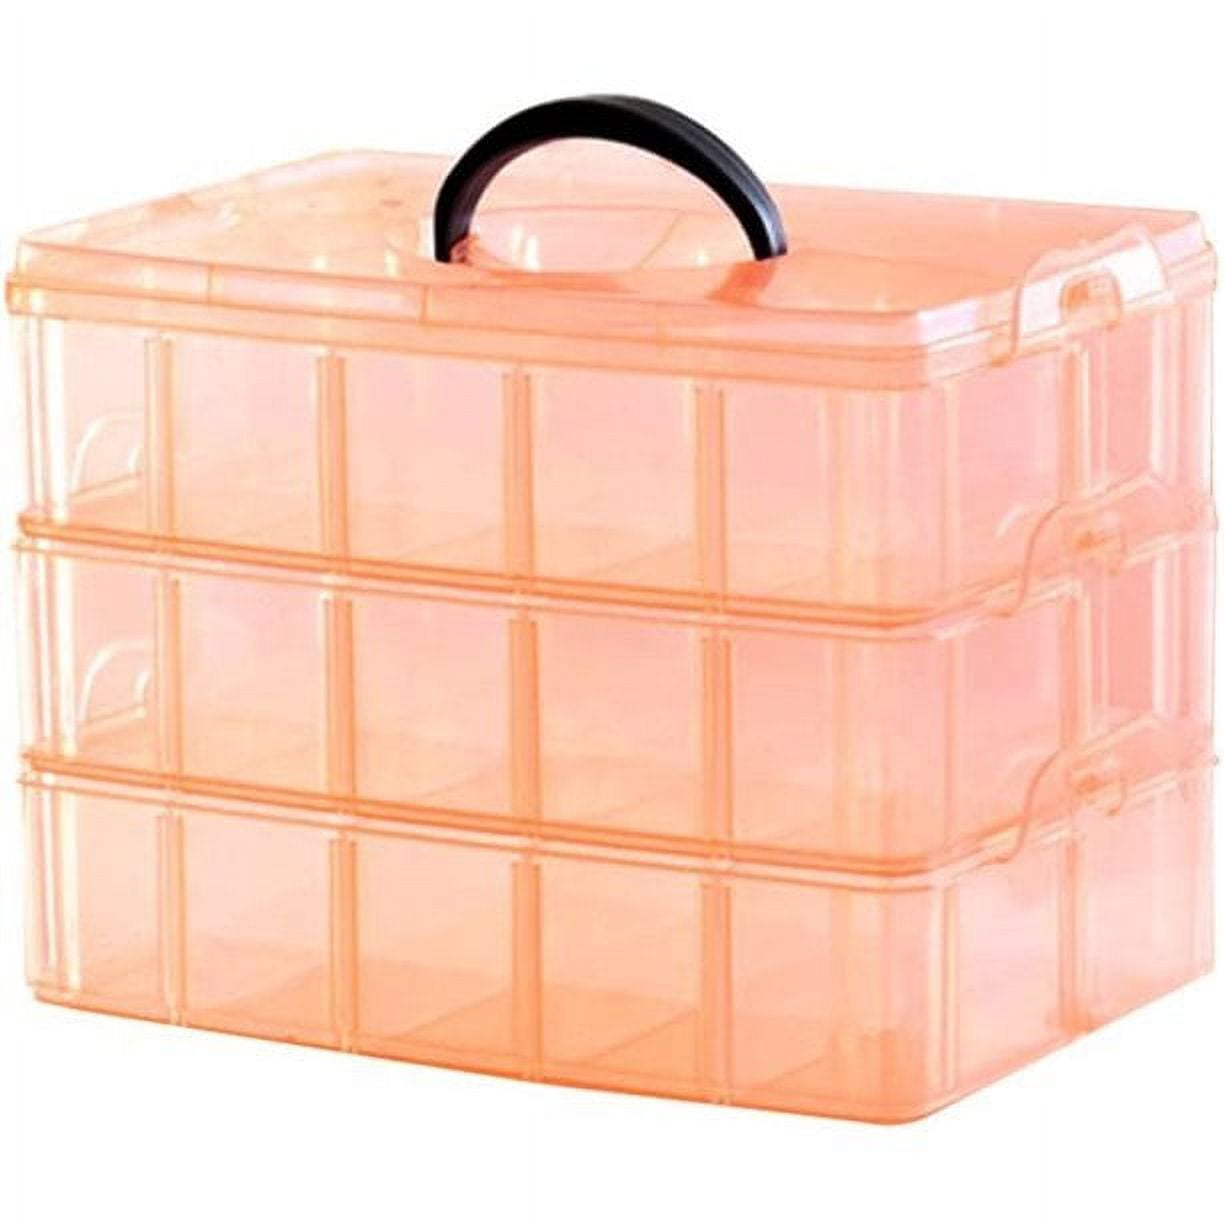  Arts & Crafts Storage Boxes & Organizers - Orange / Arts &  Crafts Storage Boxes : Arts, Crafts & Sewing